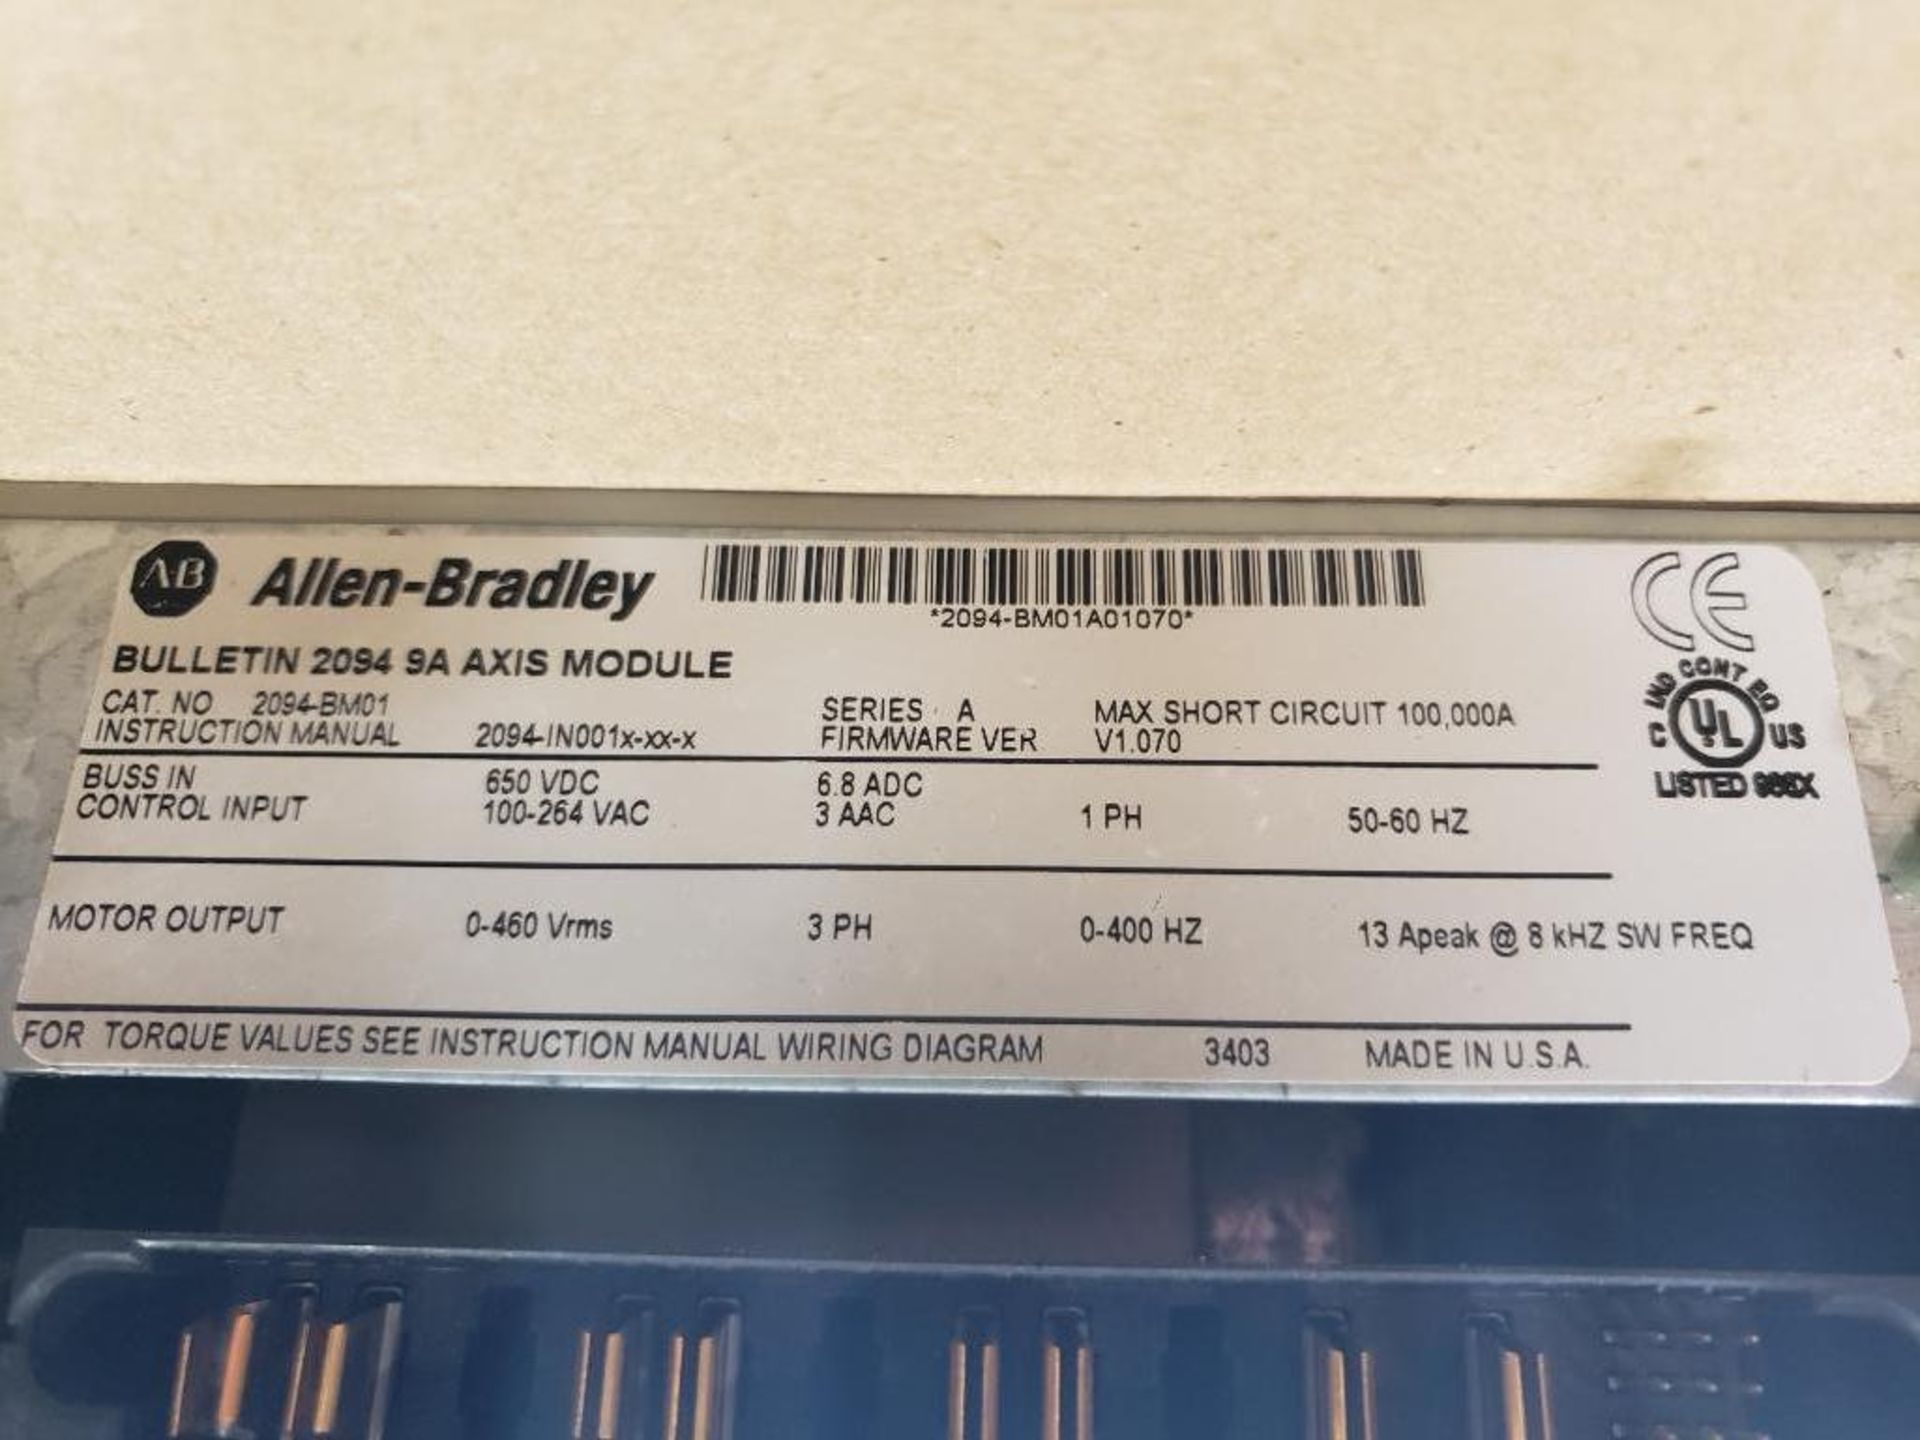 Allen Bradley Kinetix 6000 servo drive. 2094-BM01. 9A axis module. - Image 3 of 4